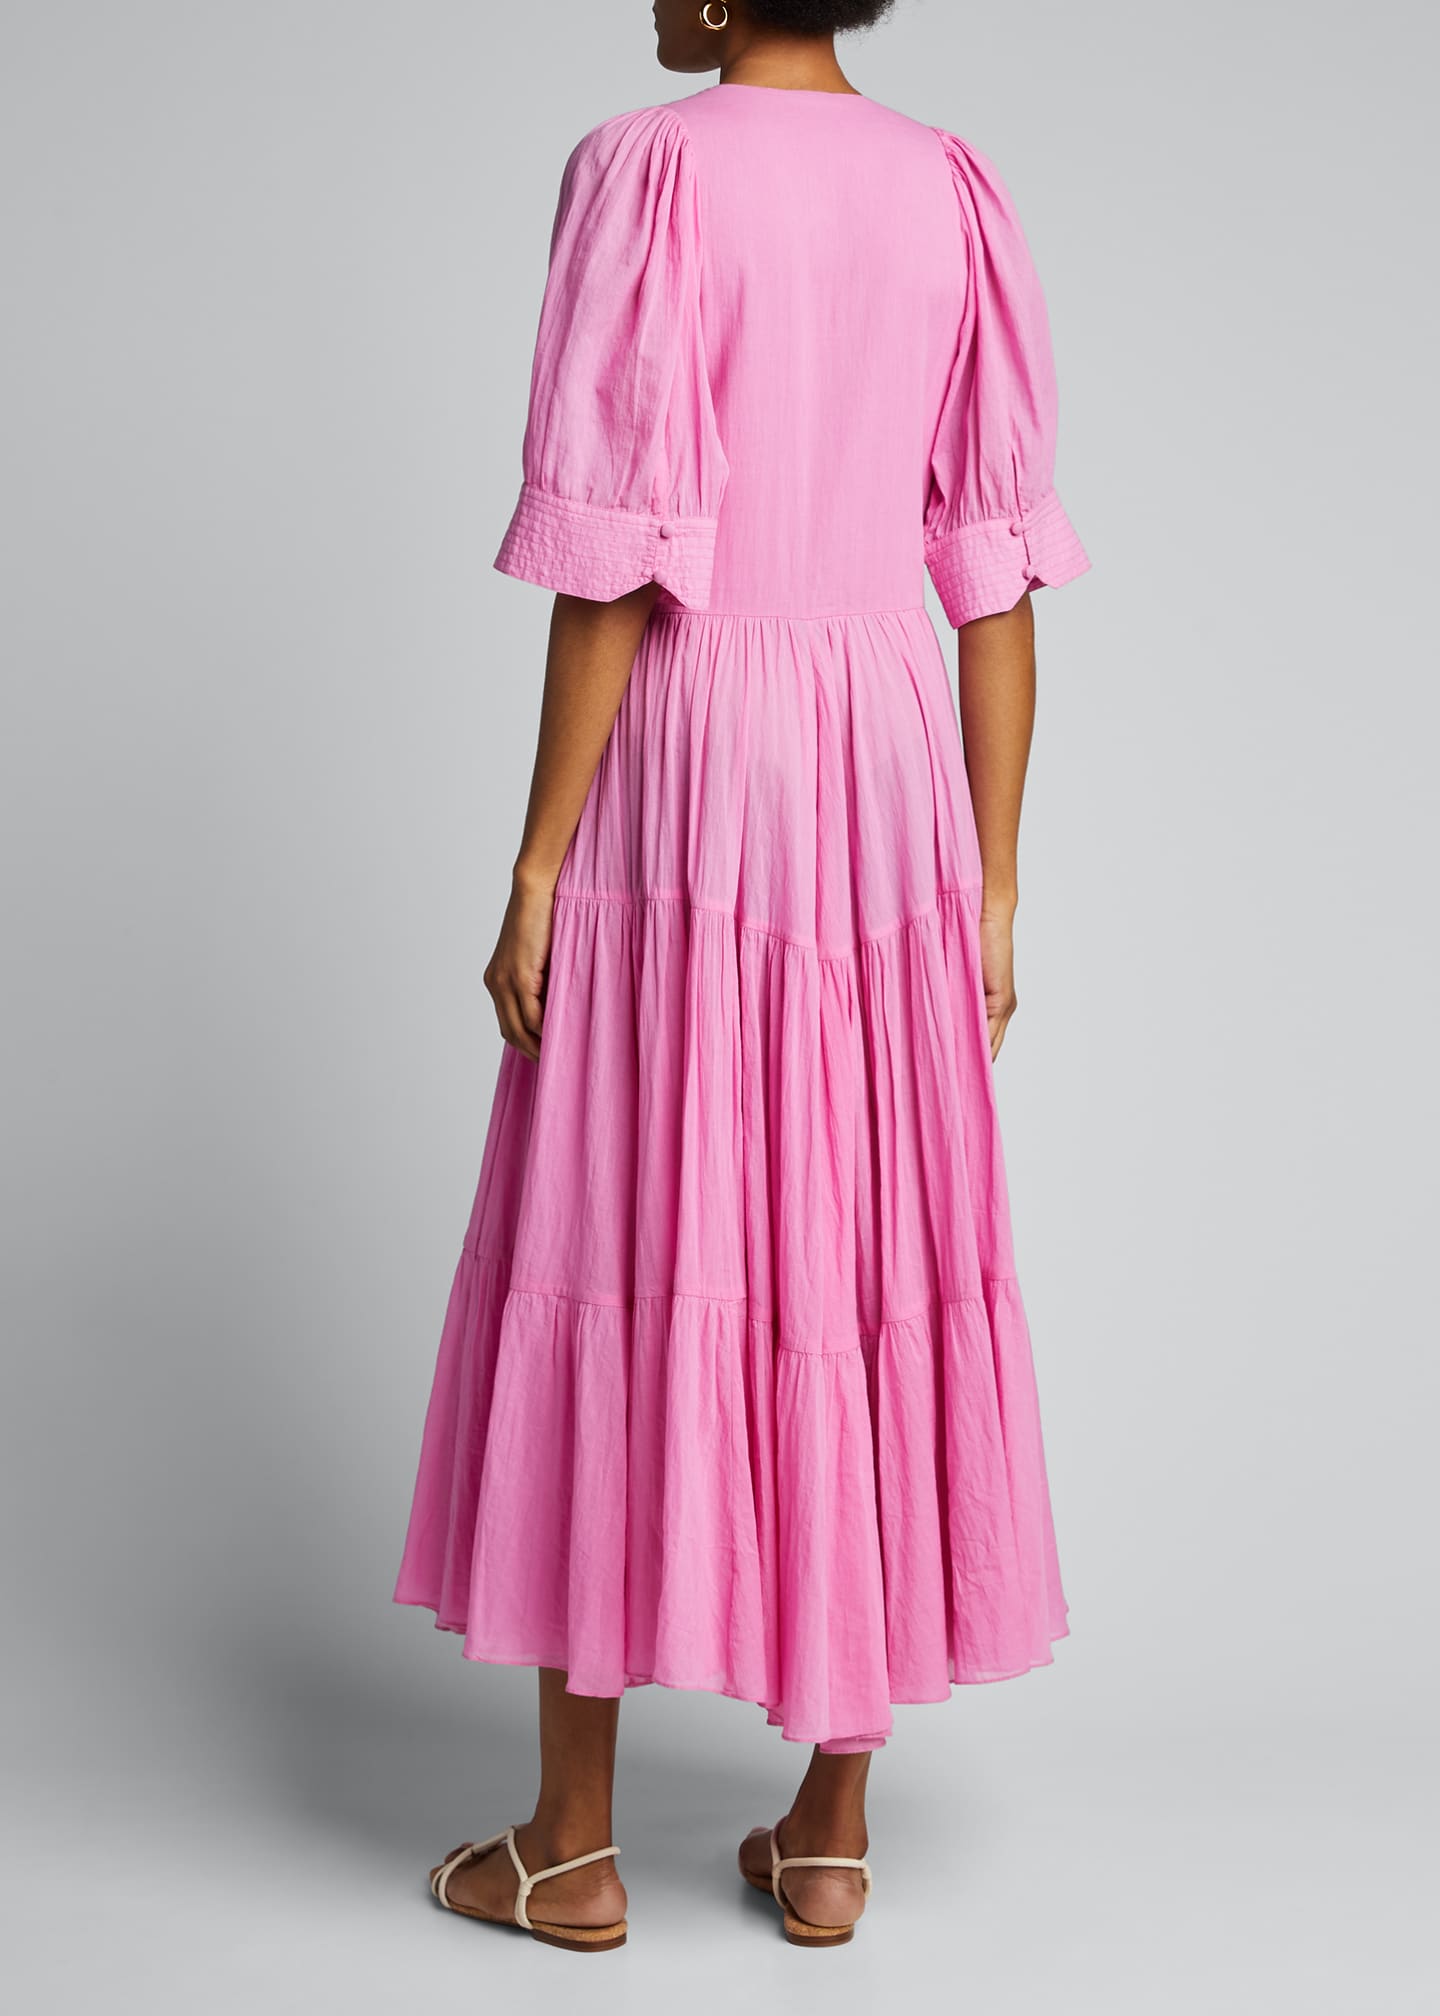 Rhode Gina Tiered Short-Sleeve Wrap Dress - Bergdorf Goodman